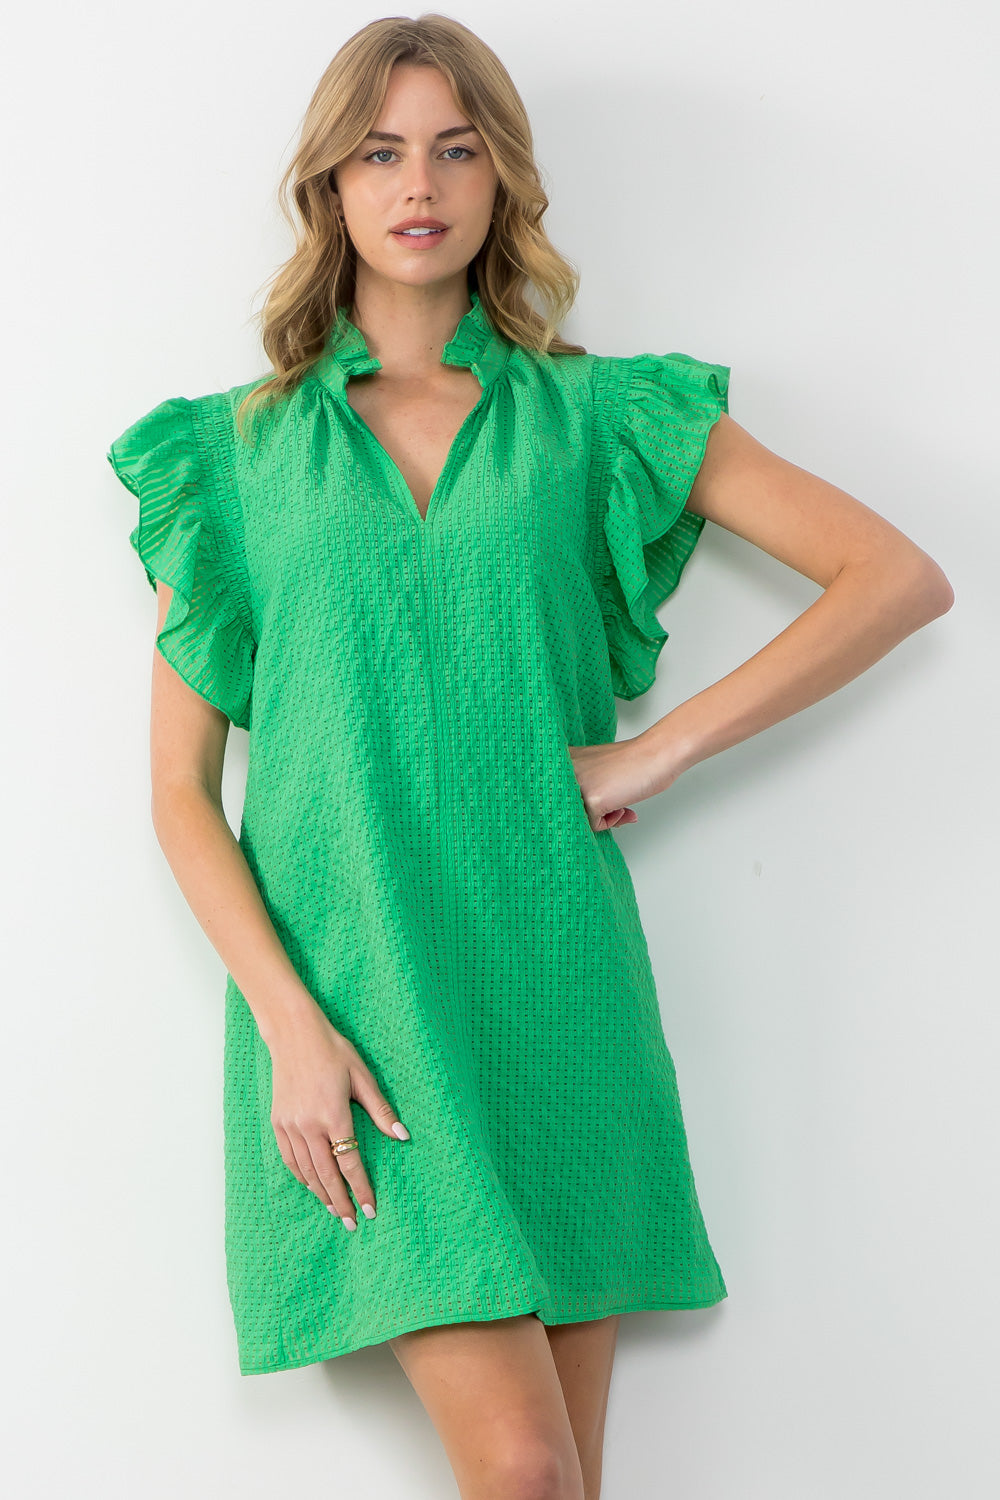 Gabriela Ruffle Sleve Textured Green Dress